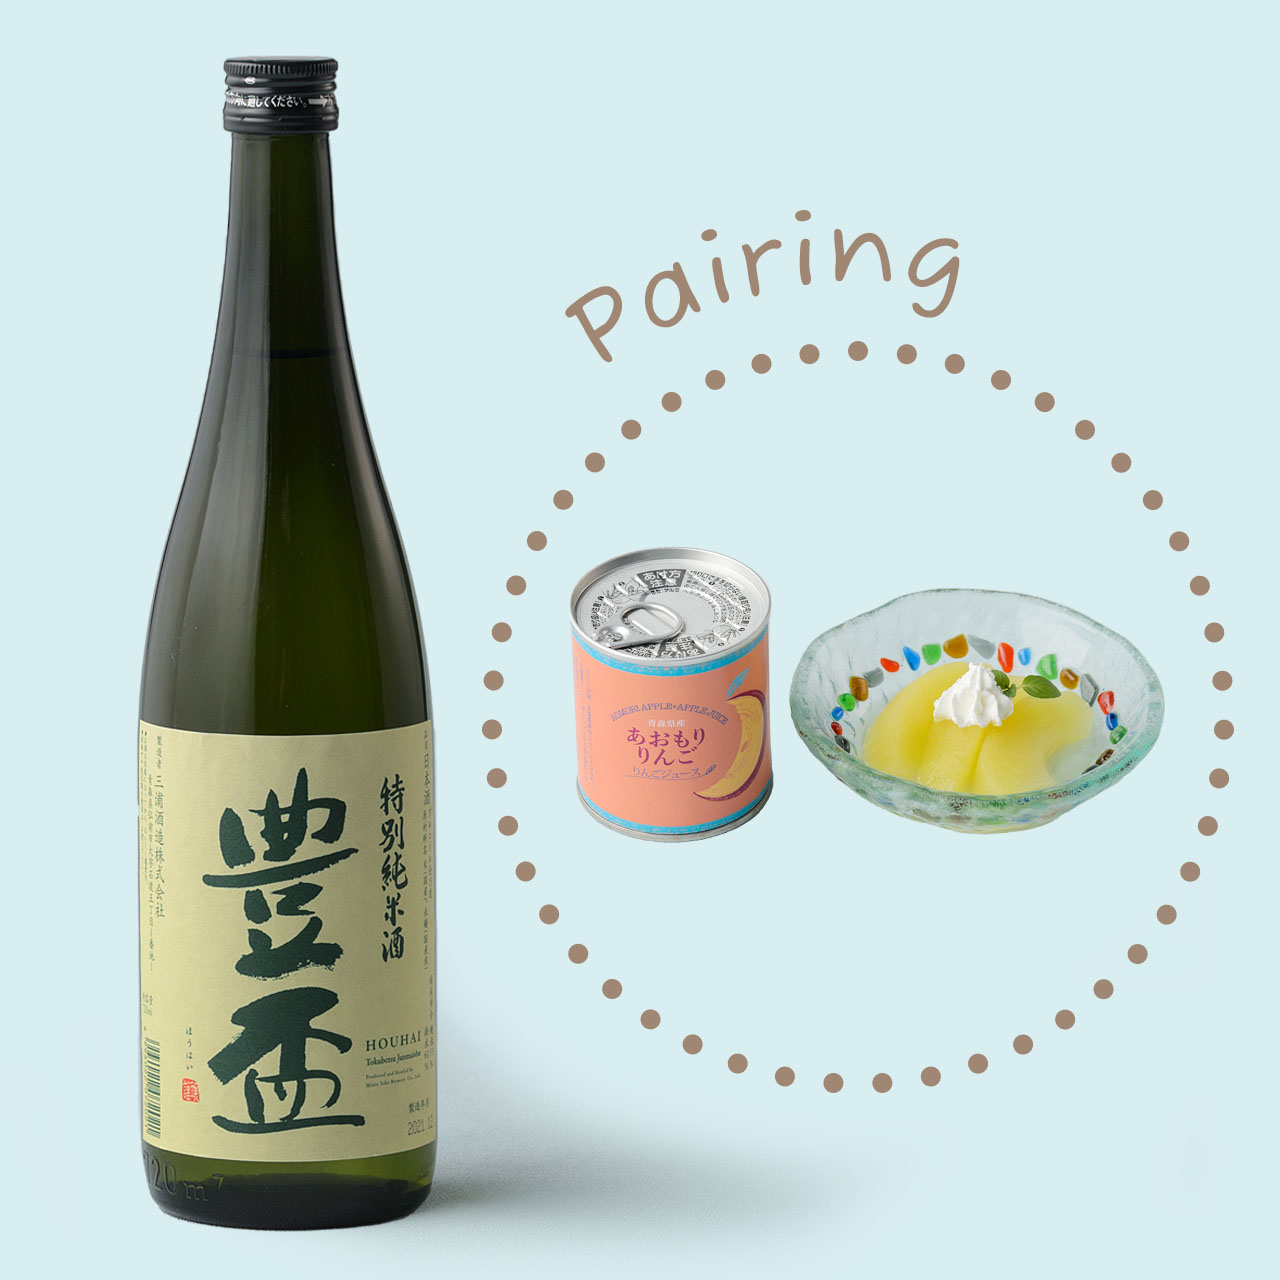 豊盃 特別純米酒×あおもりりんご シラップ漬け(リンゴジュース) - 青森県、お酒と食のペアリングはじめました!